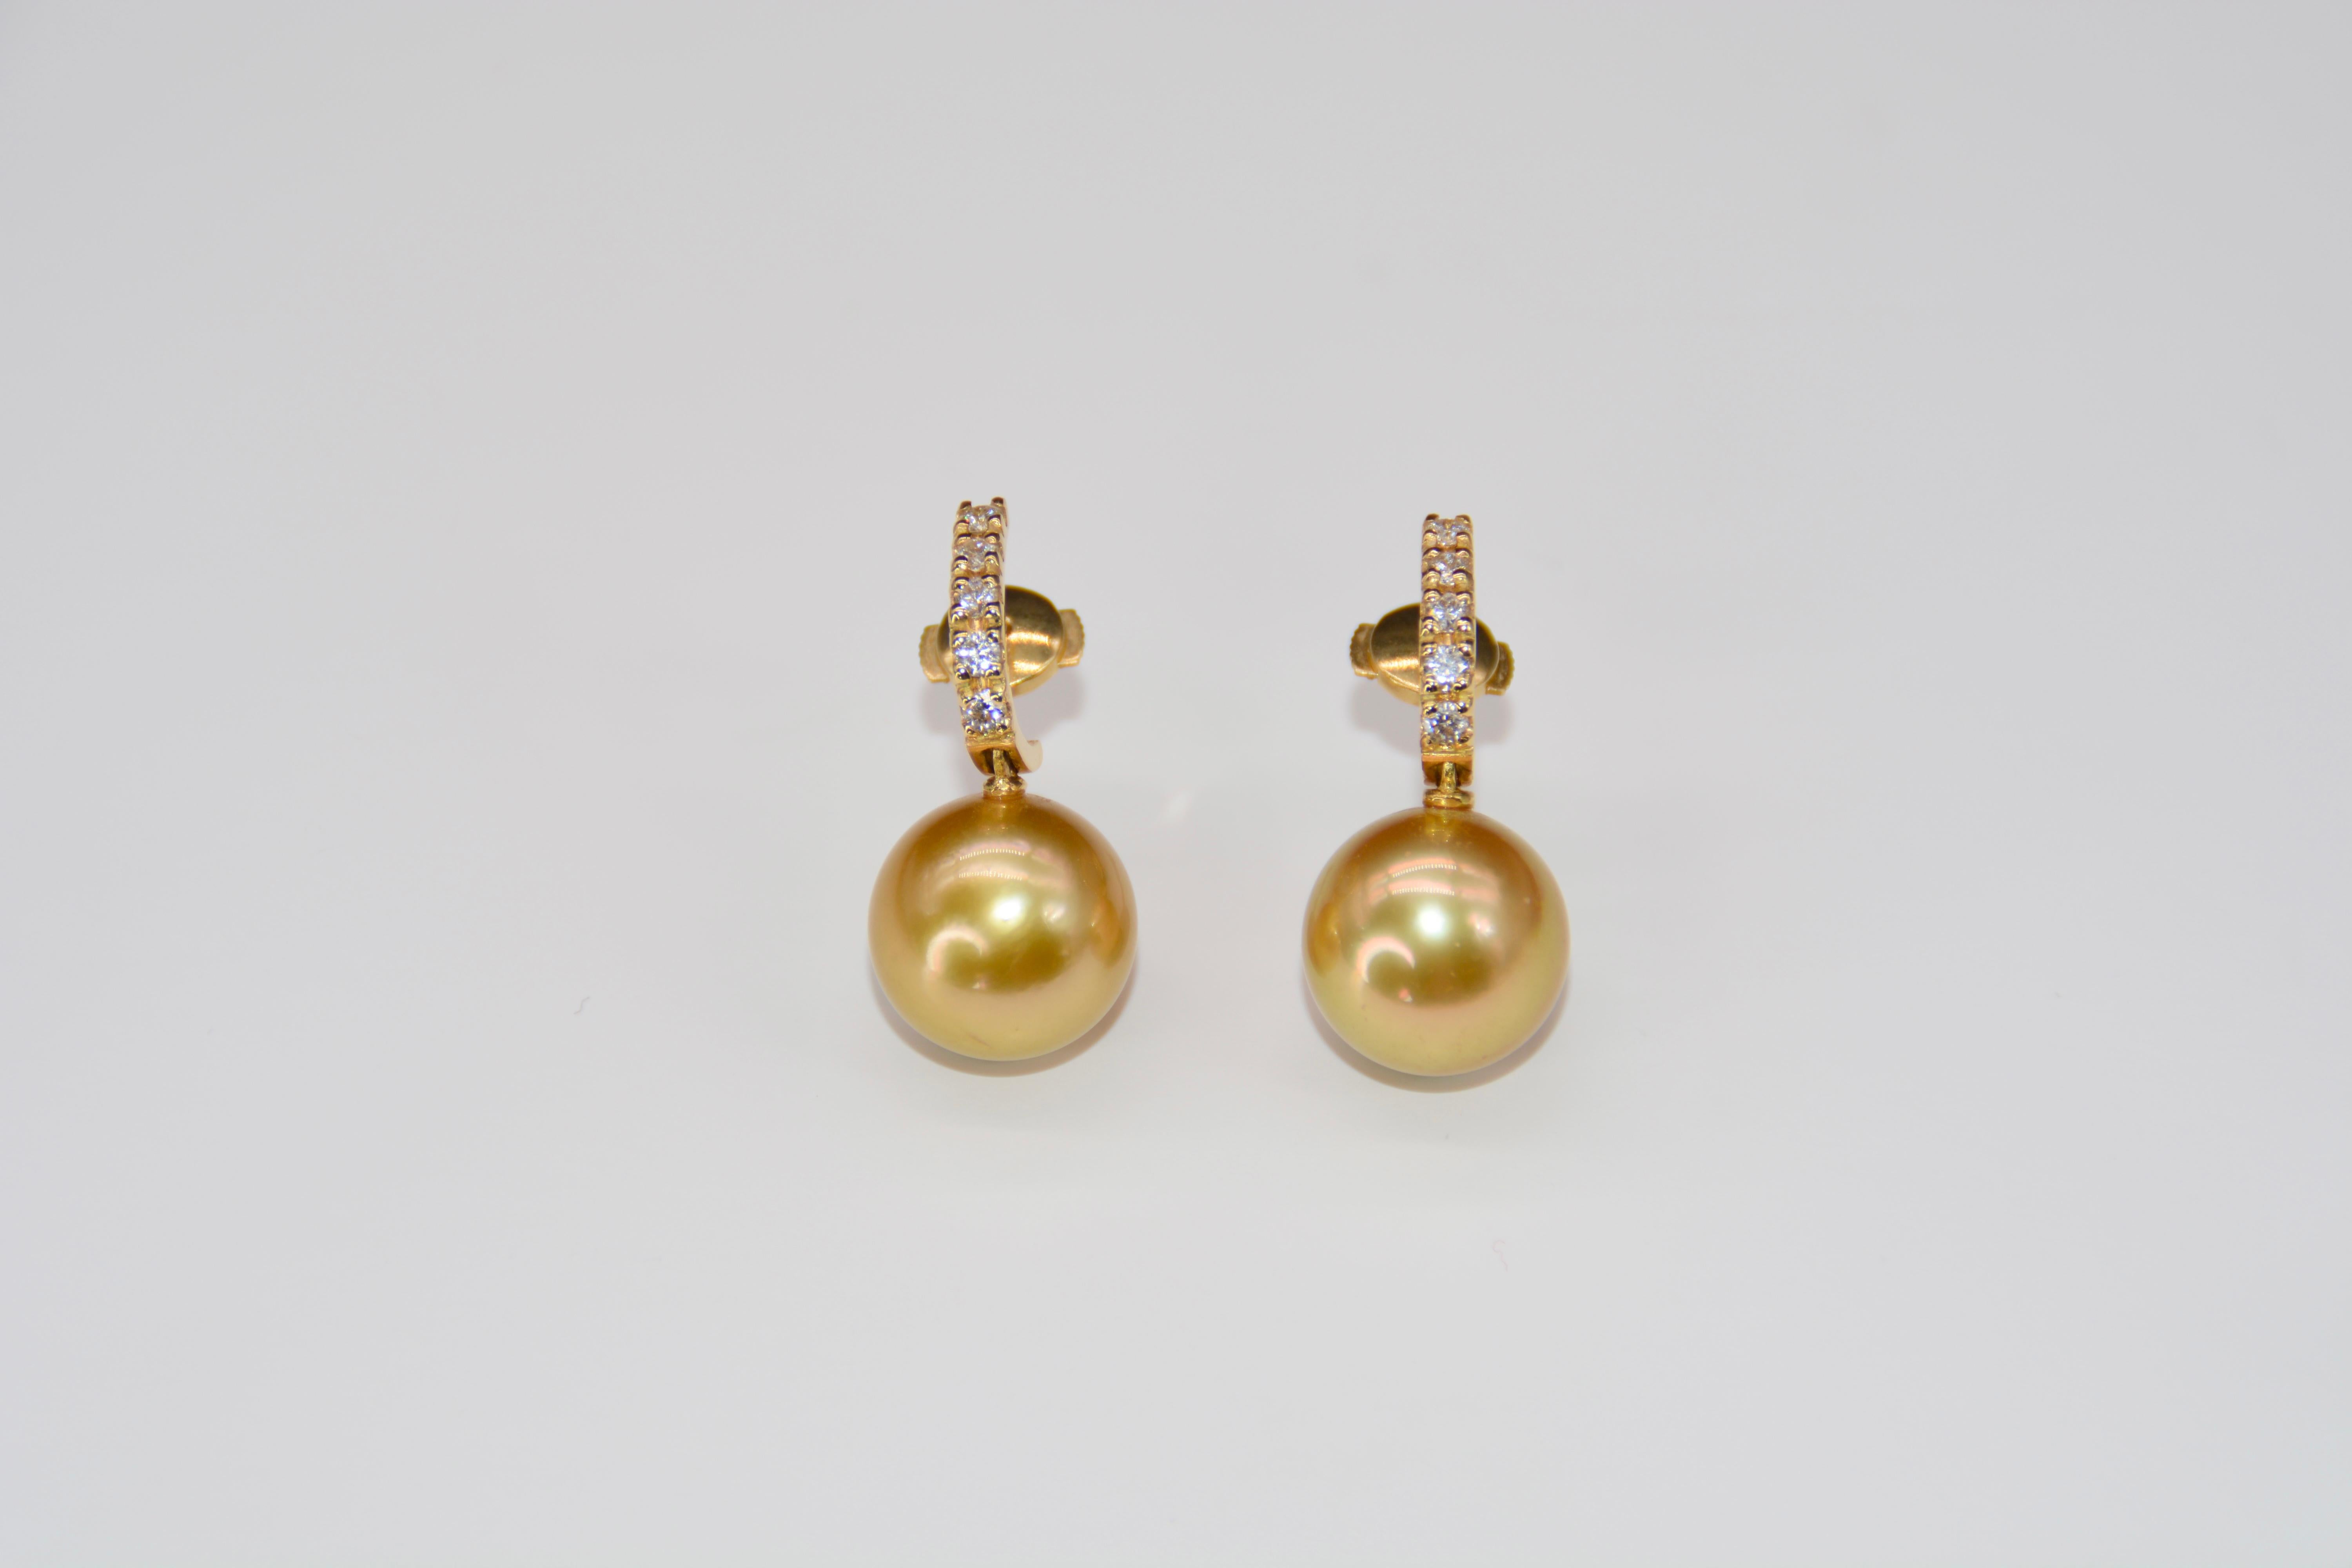 Boucles d'oreilles pendentifs Perle d'or perles Diamants Or jaune 

Magnifique boucles d'oreilles pendantes en or jaune surmontées de 5x2 diamants taille brillant pour un poids de 0,37 carats. Pour terminer ces boucles d'oreilles, 1 perle de perle